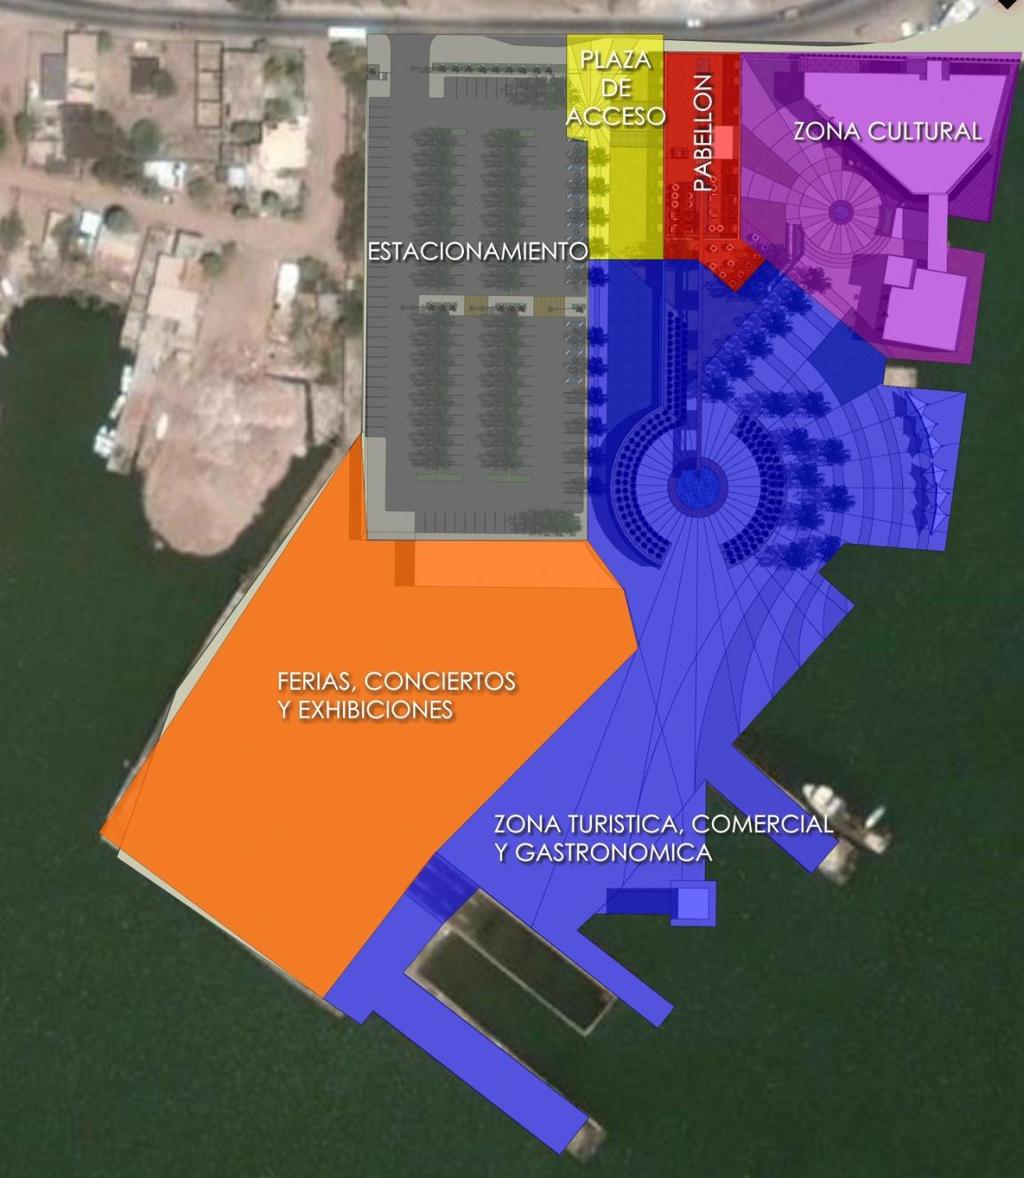 ZONIFICACIÓN IMAGEN 53: Zonificación de usos de suelo para el Muelle Cultural Guaymas.